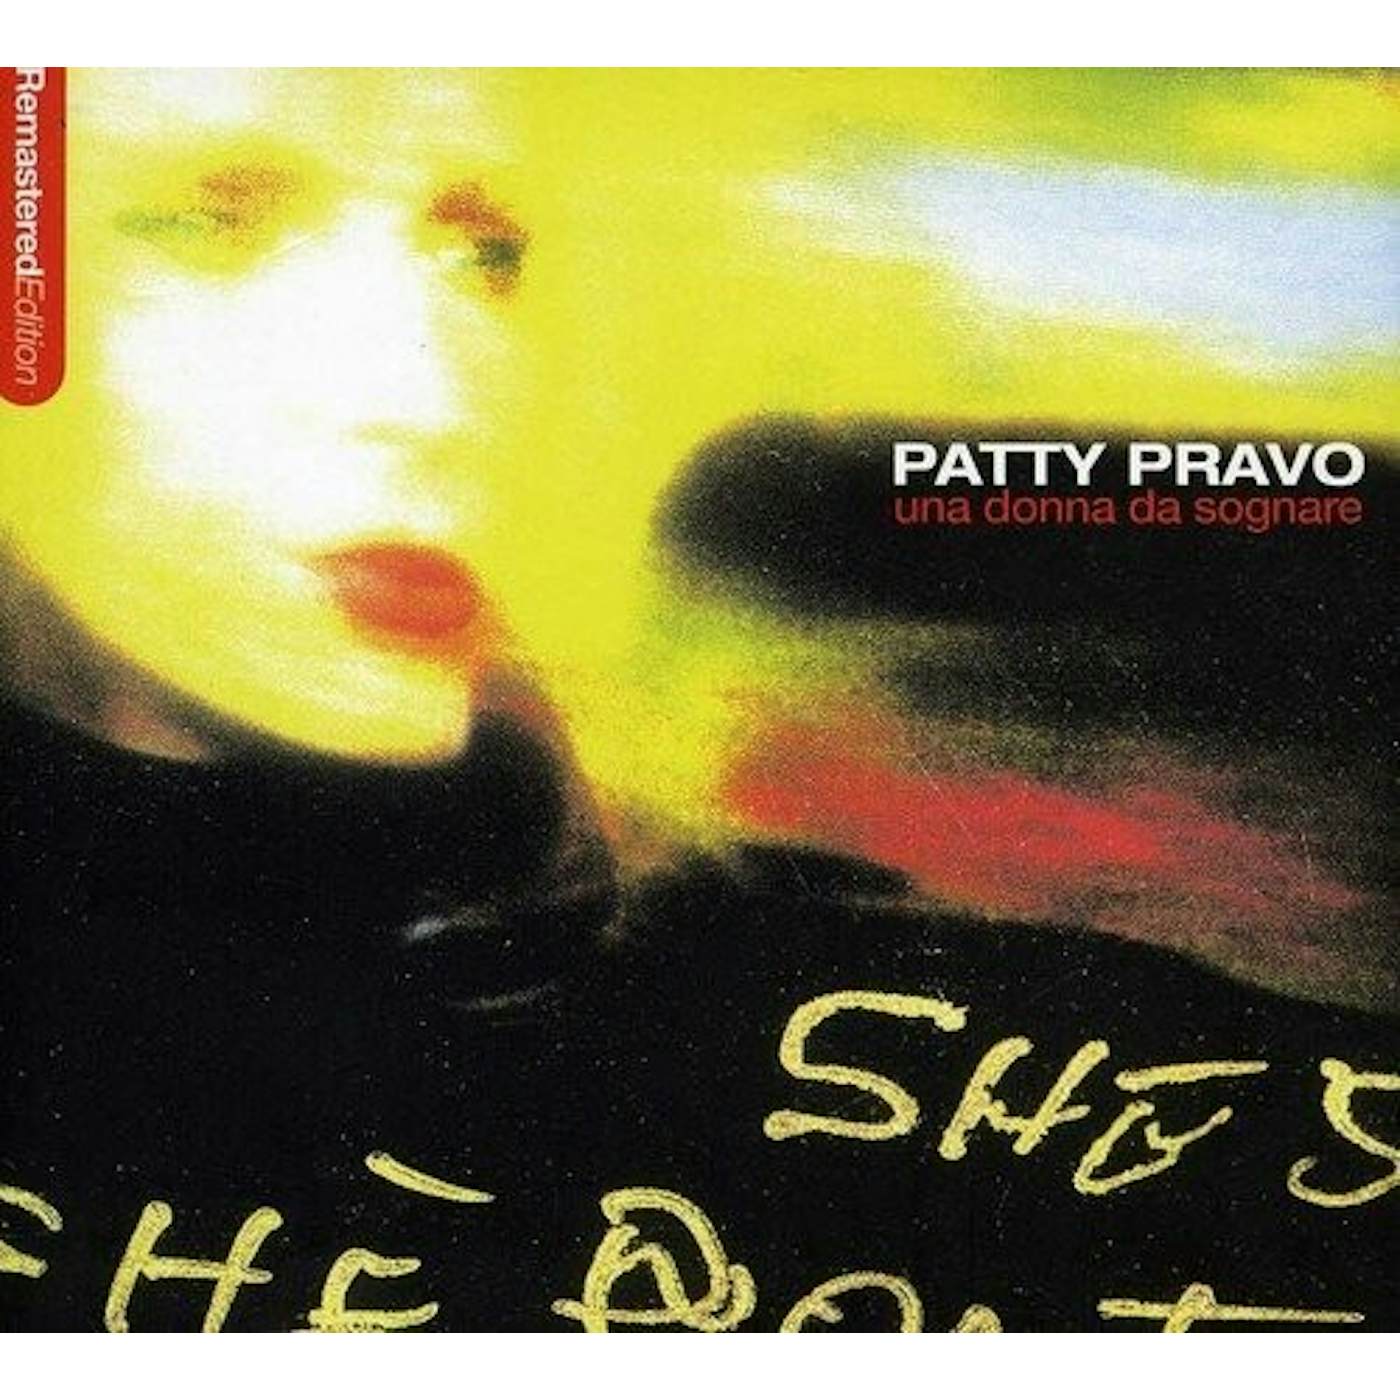 Patty Pravo Una donna da sognare Vinyl Record